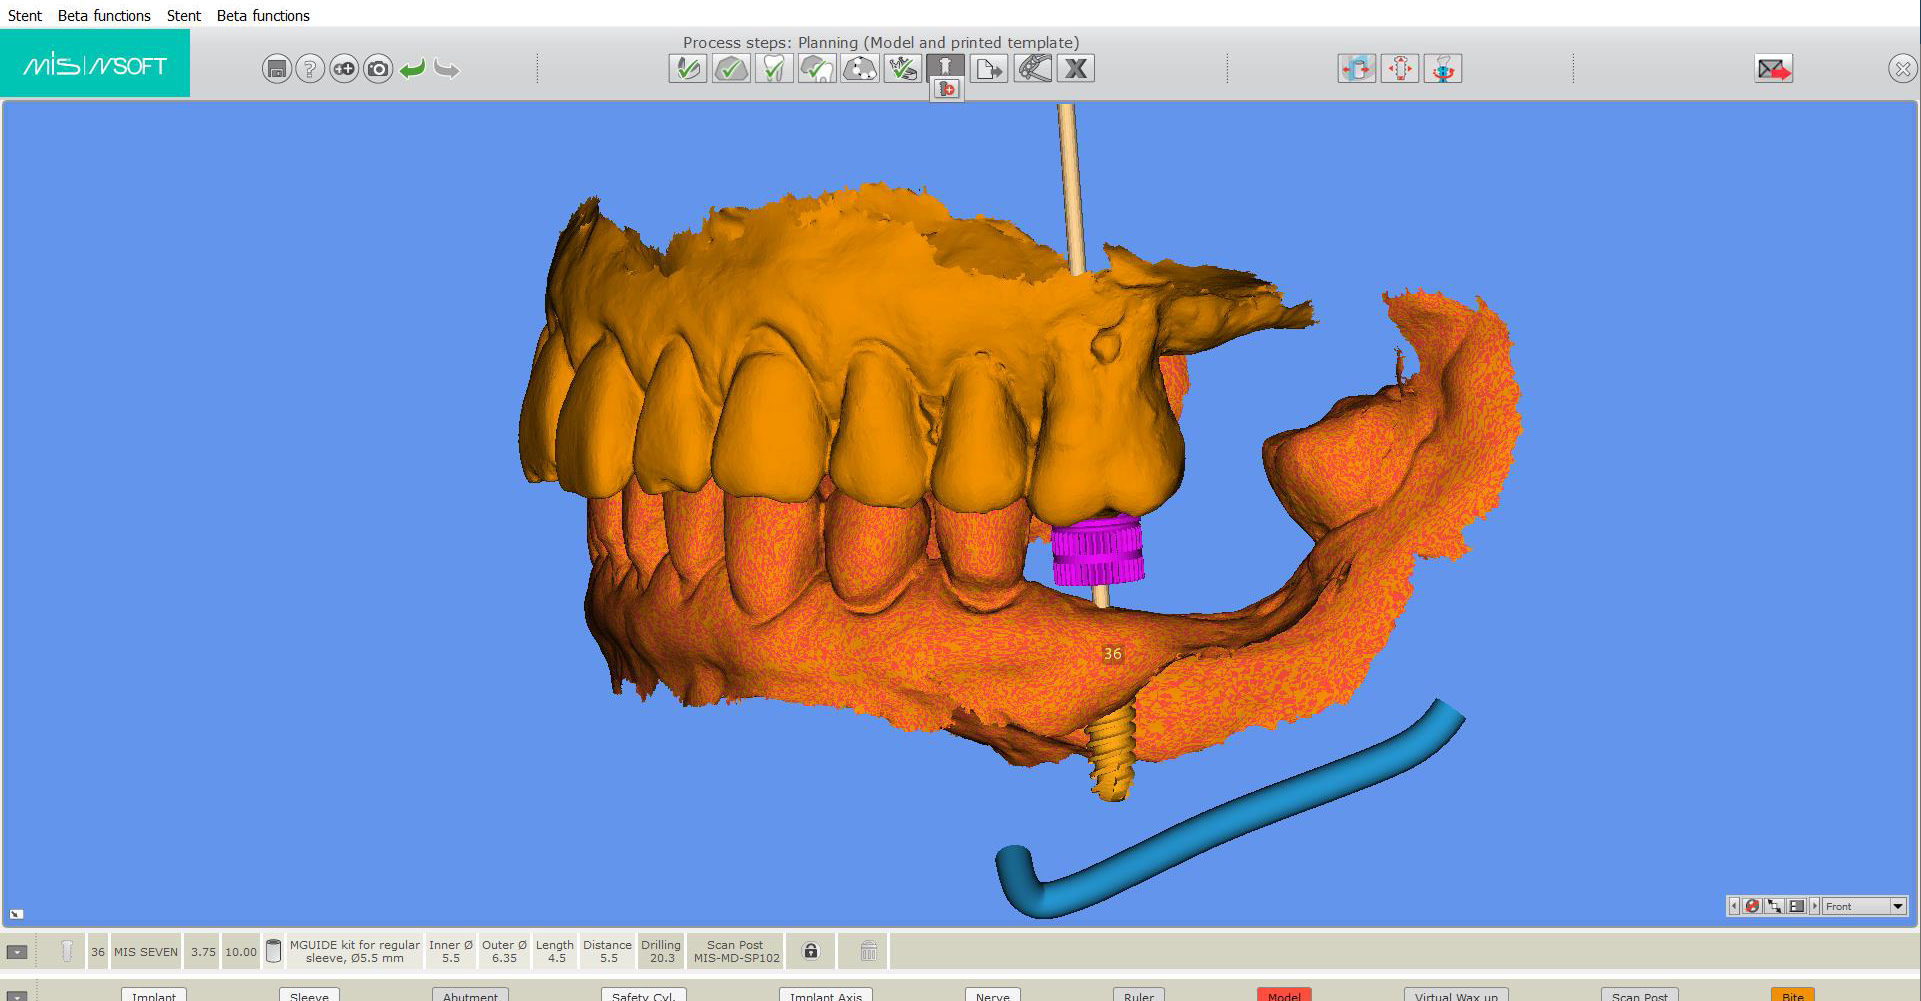 A digital dental implant visualised